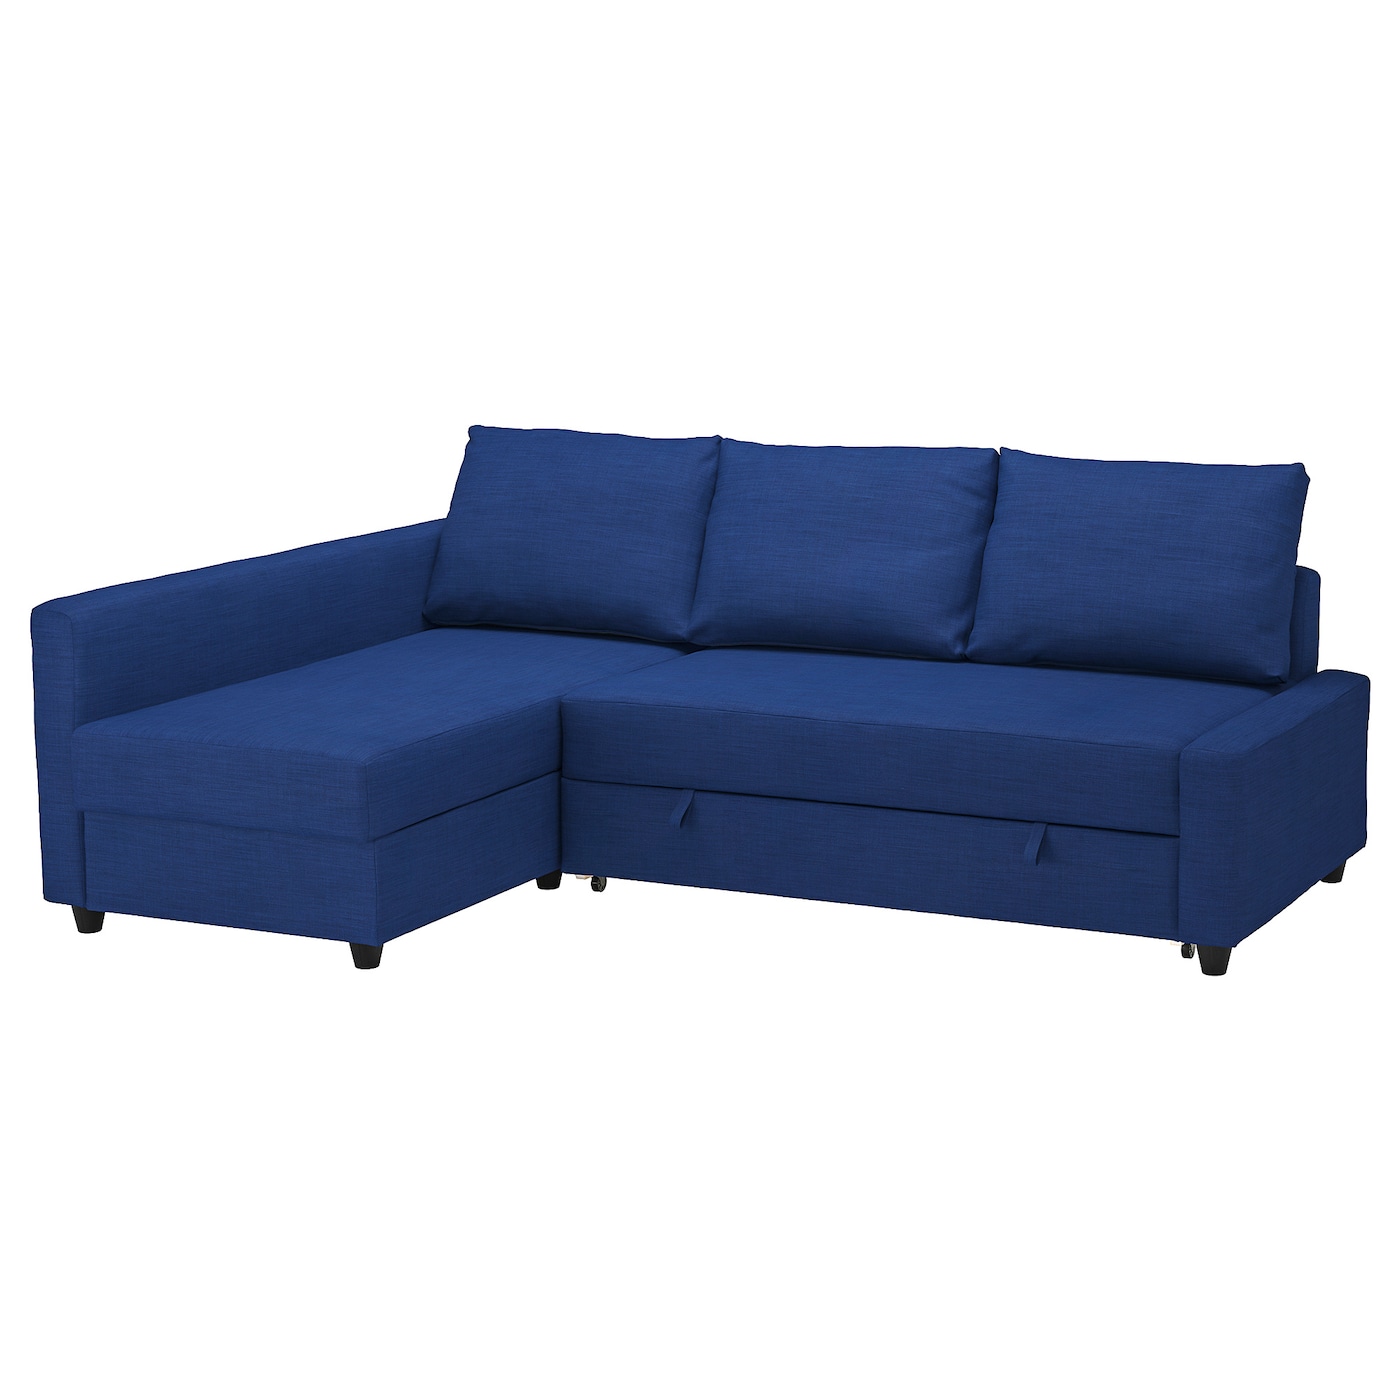 ФРИХЕТЕН Угловой диван-кровать + место для хранения, Скифтебо синий FRIHETEN IKEA диван диван ру викс textile light